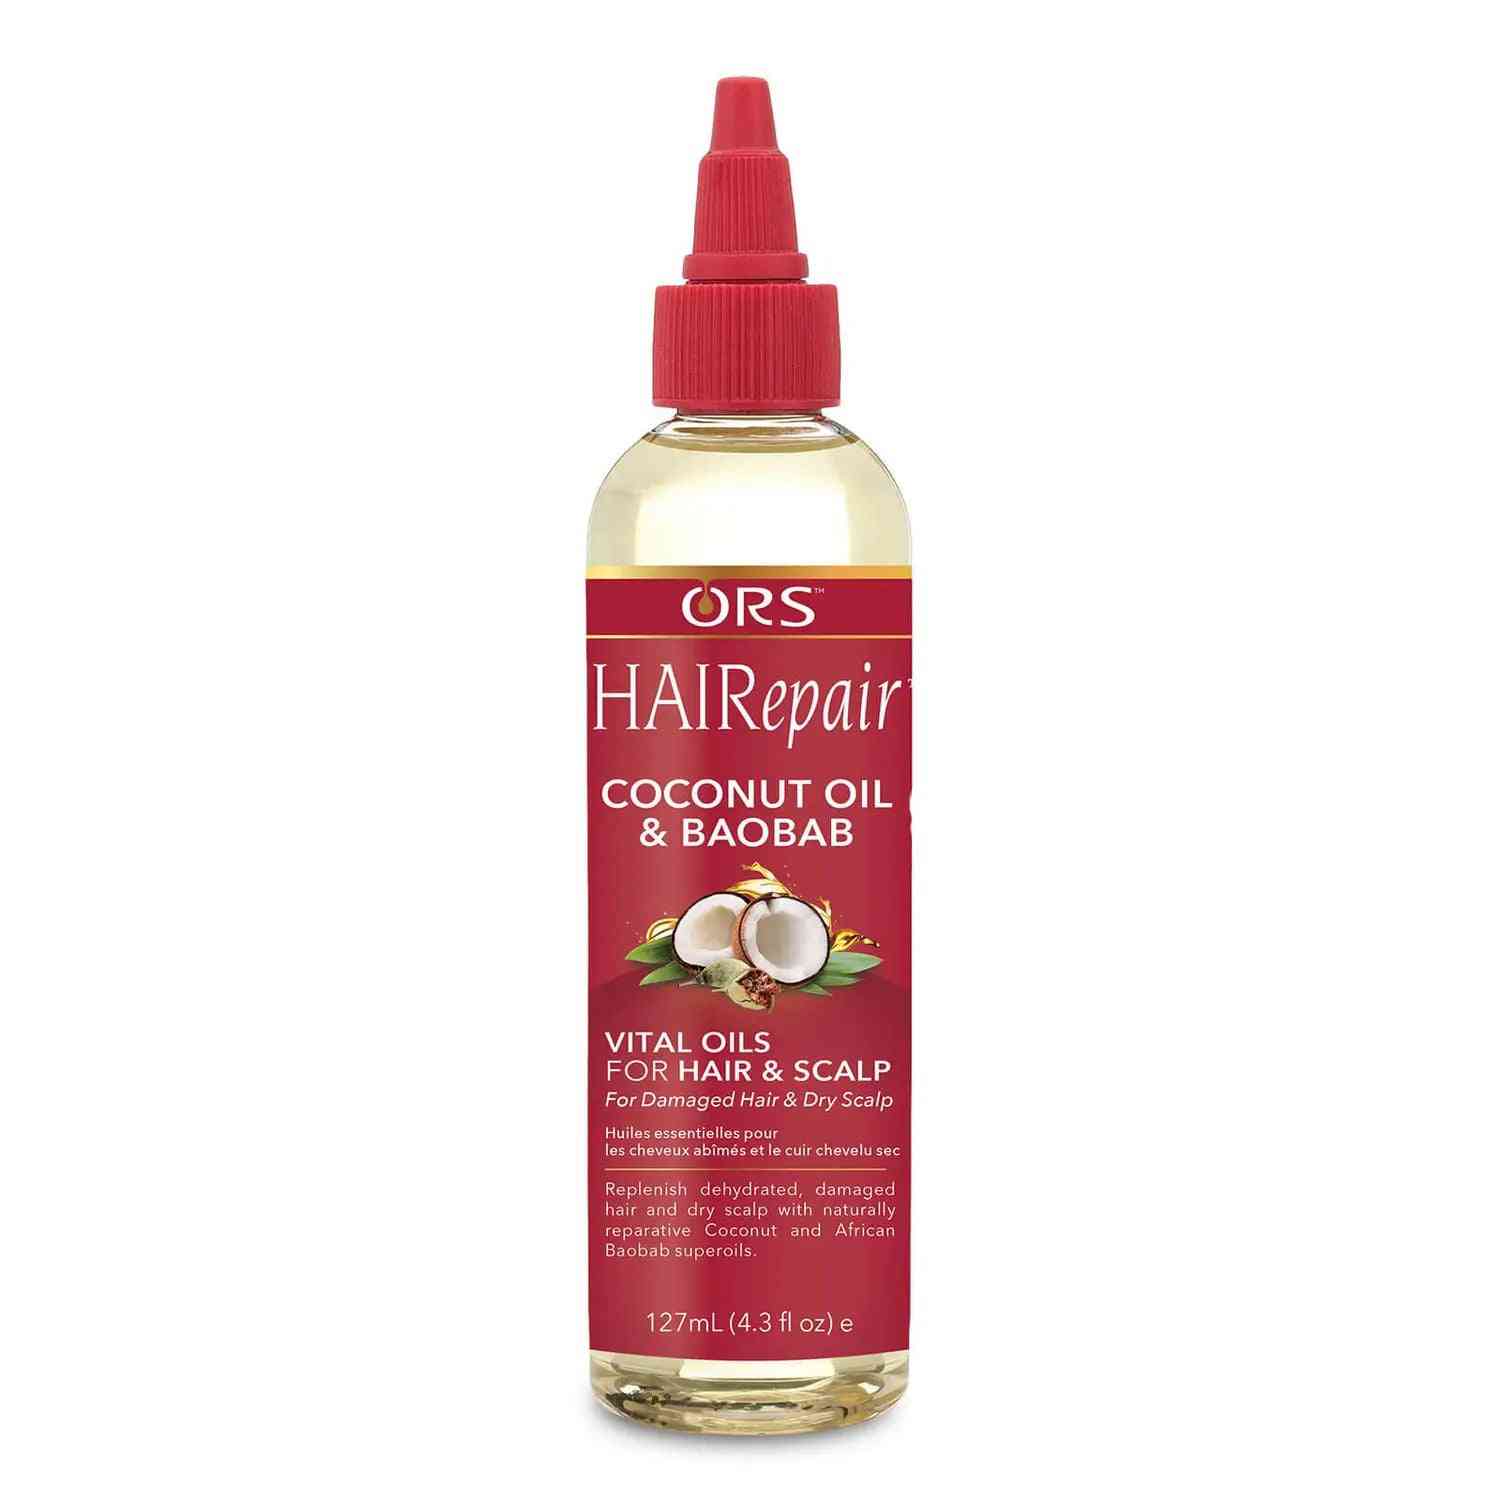 Hairepair™ huiles vitales pour cheveux et cuir chevelu 4 oz